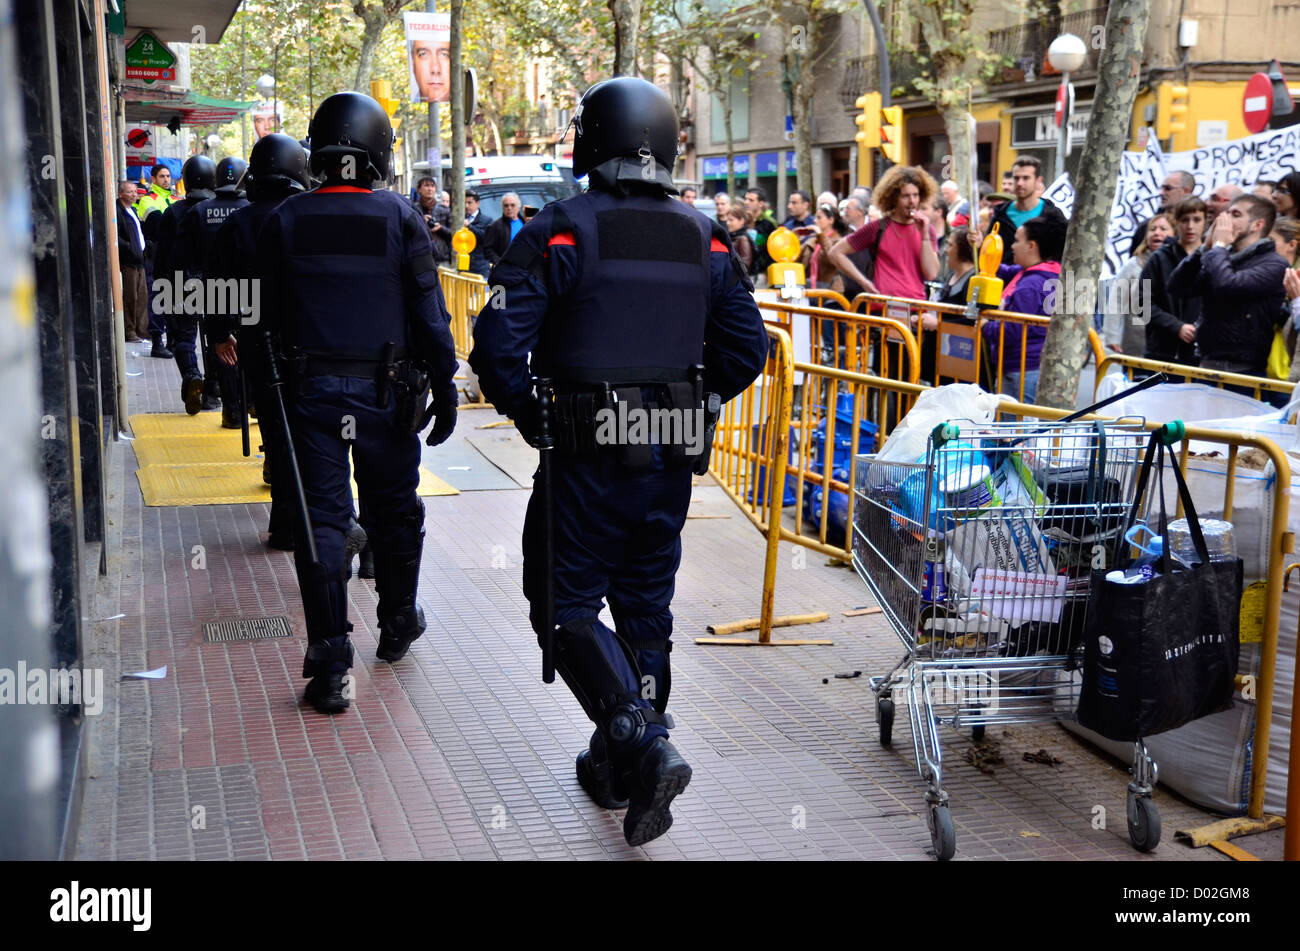 Demonstrations & general strike in L'Hospitalet de Llobregat (Barcelona). Demands on payment in kind in mortages. Stock Photo